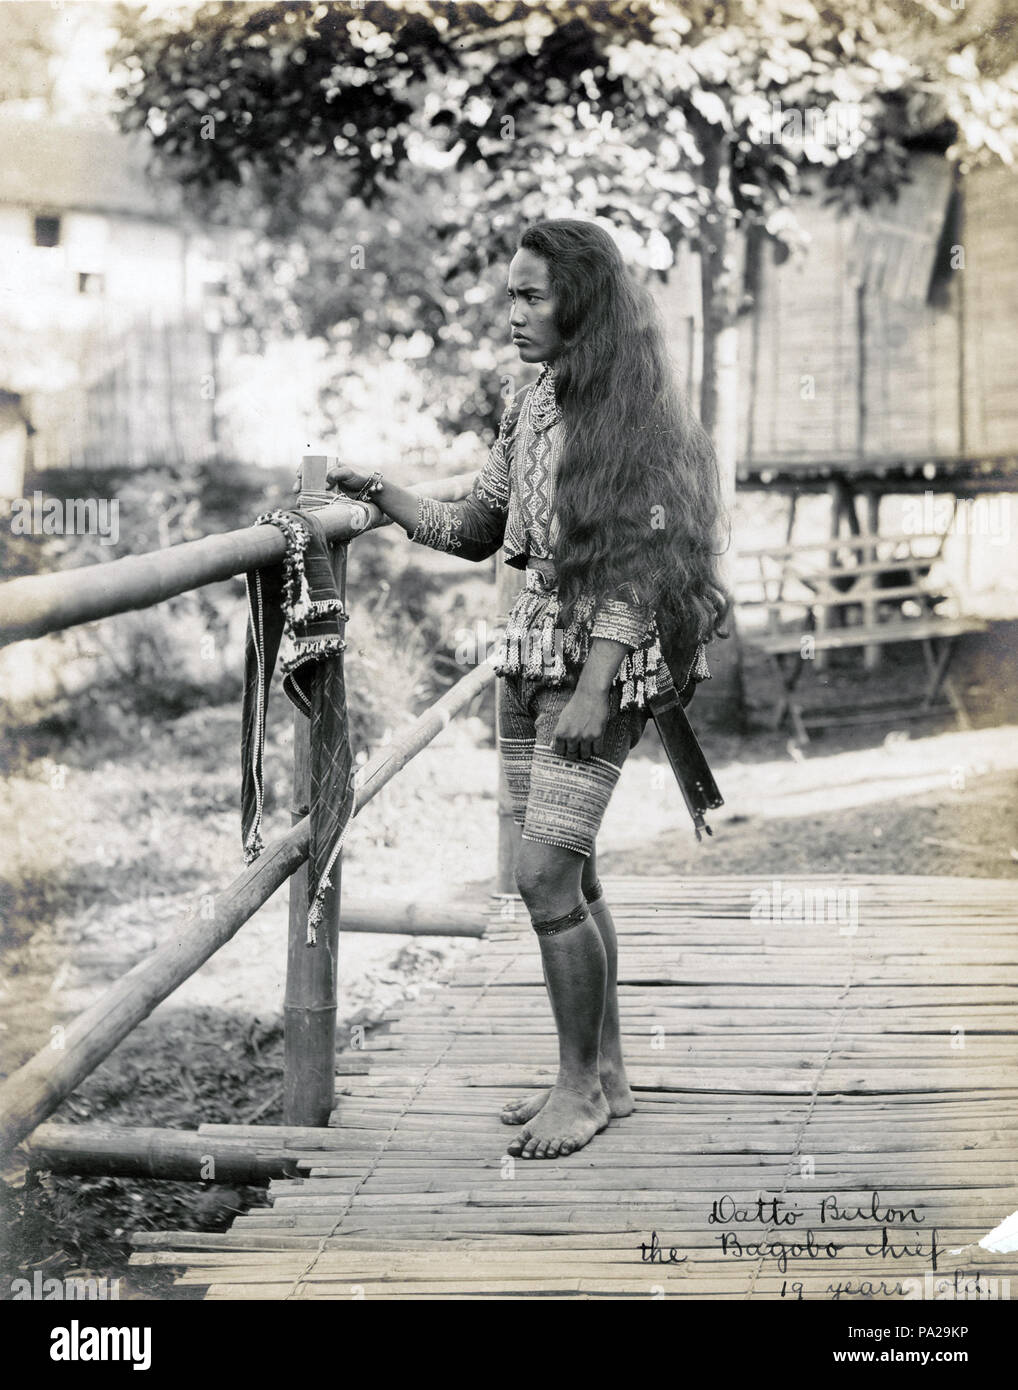 2 "Datbi Bulon, Bagabo chief. 19 Jahre alt." (Philippine Reservierung, Abteilung für Anthropologie, 1904 World's Fair) Stockfoto